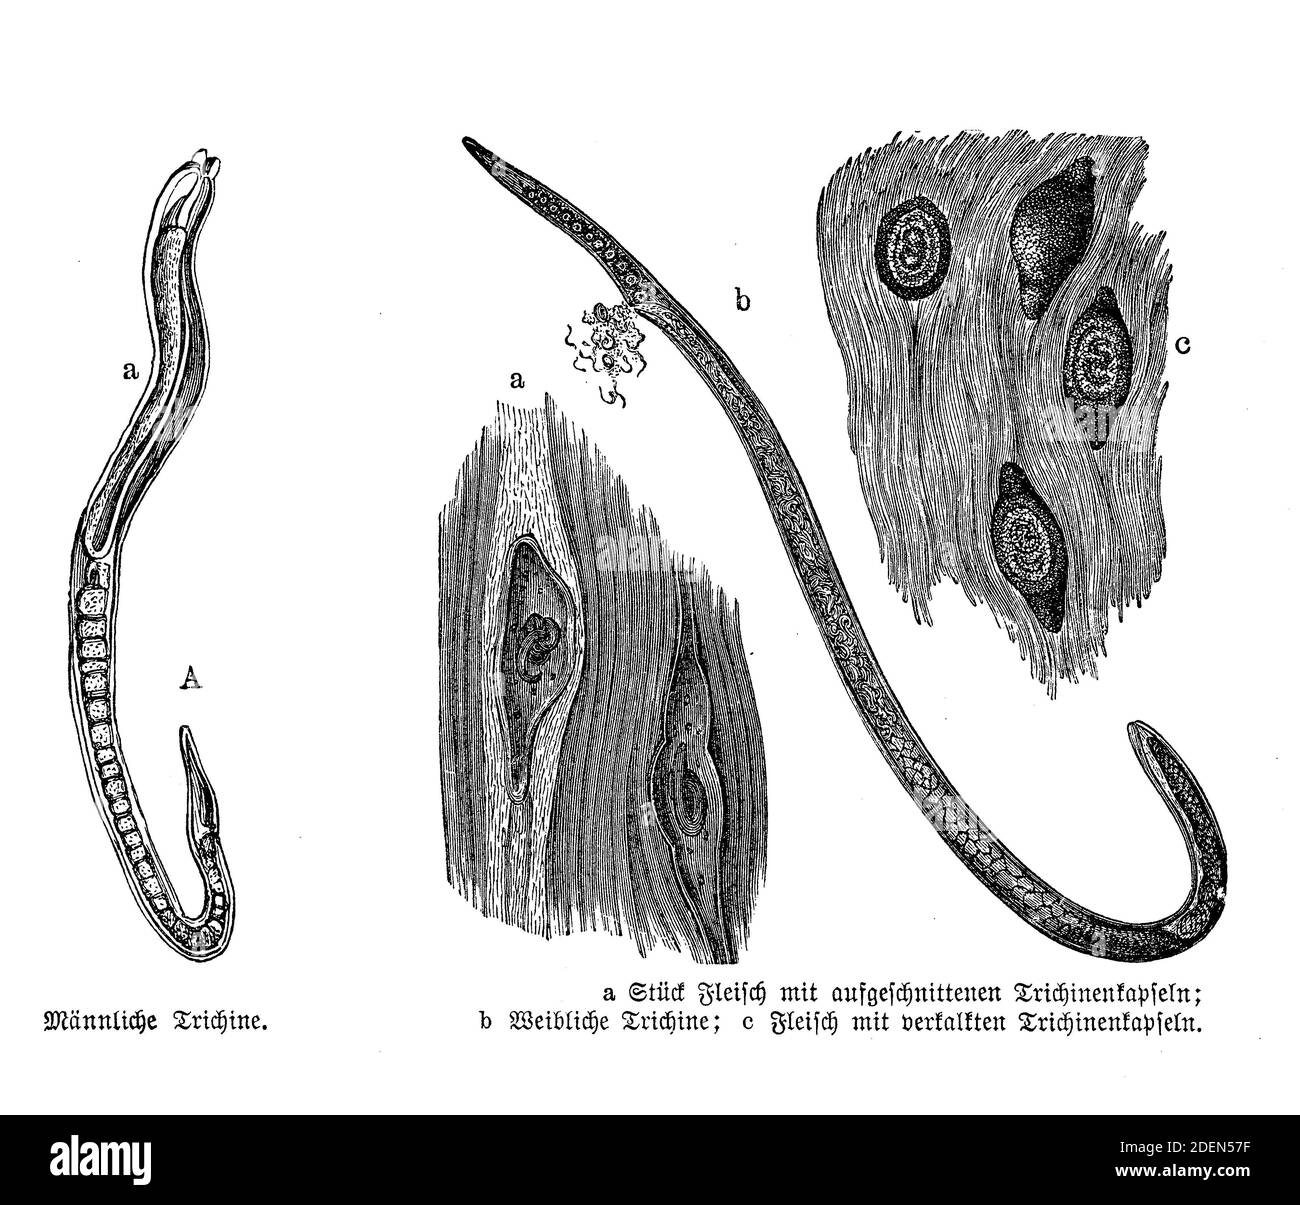 Trichinella spiralis, parásito responsable de la enfermedad trichinosis. Conocido como gusano de cerdo debido a que se encuentra en productos de cerdo poco cocidos, ilustración del siglo 19 Foto de stock